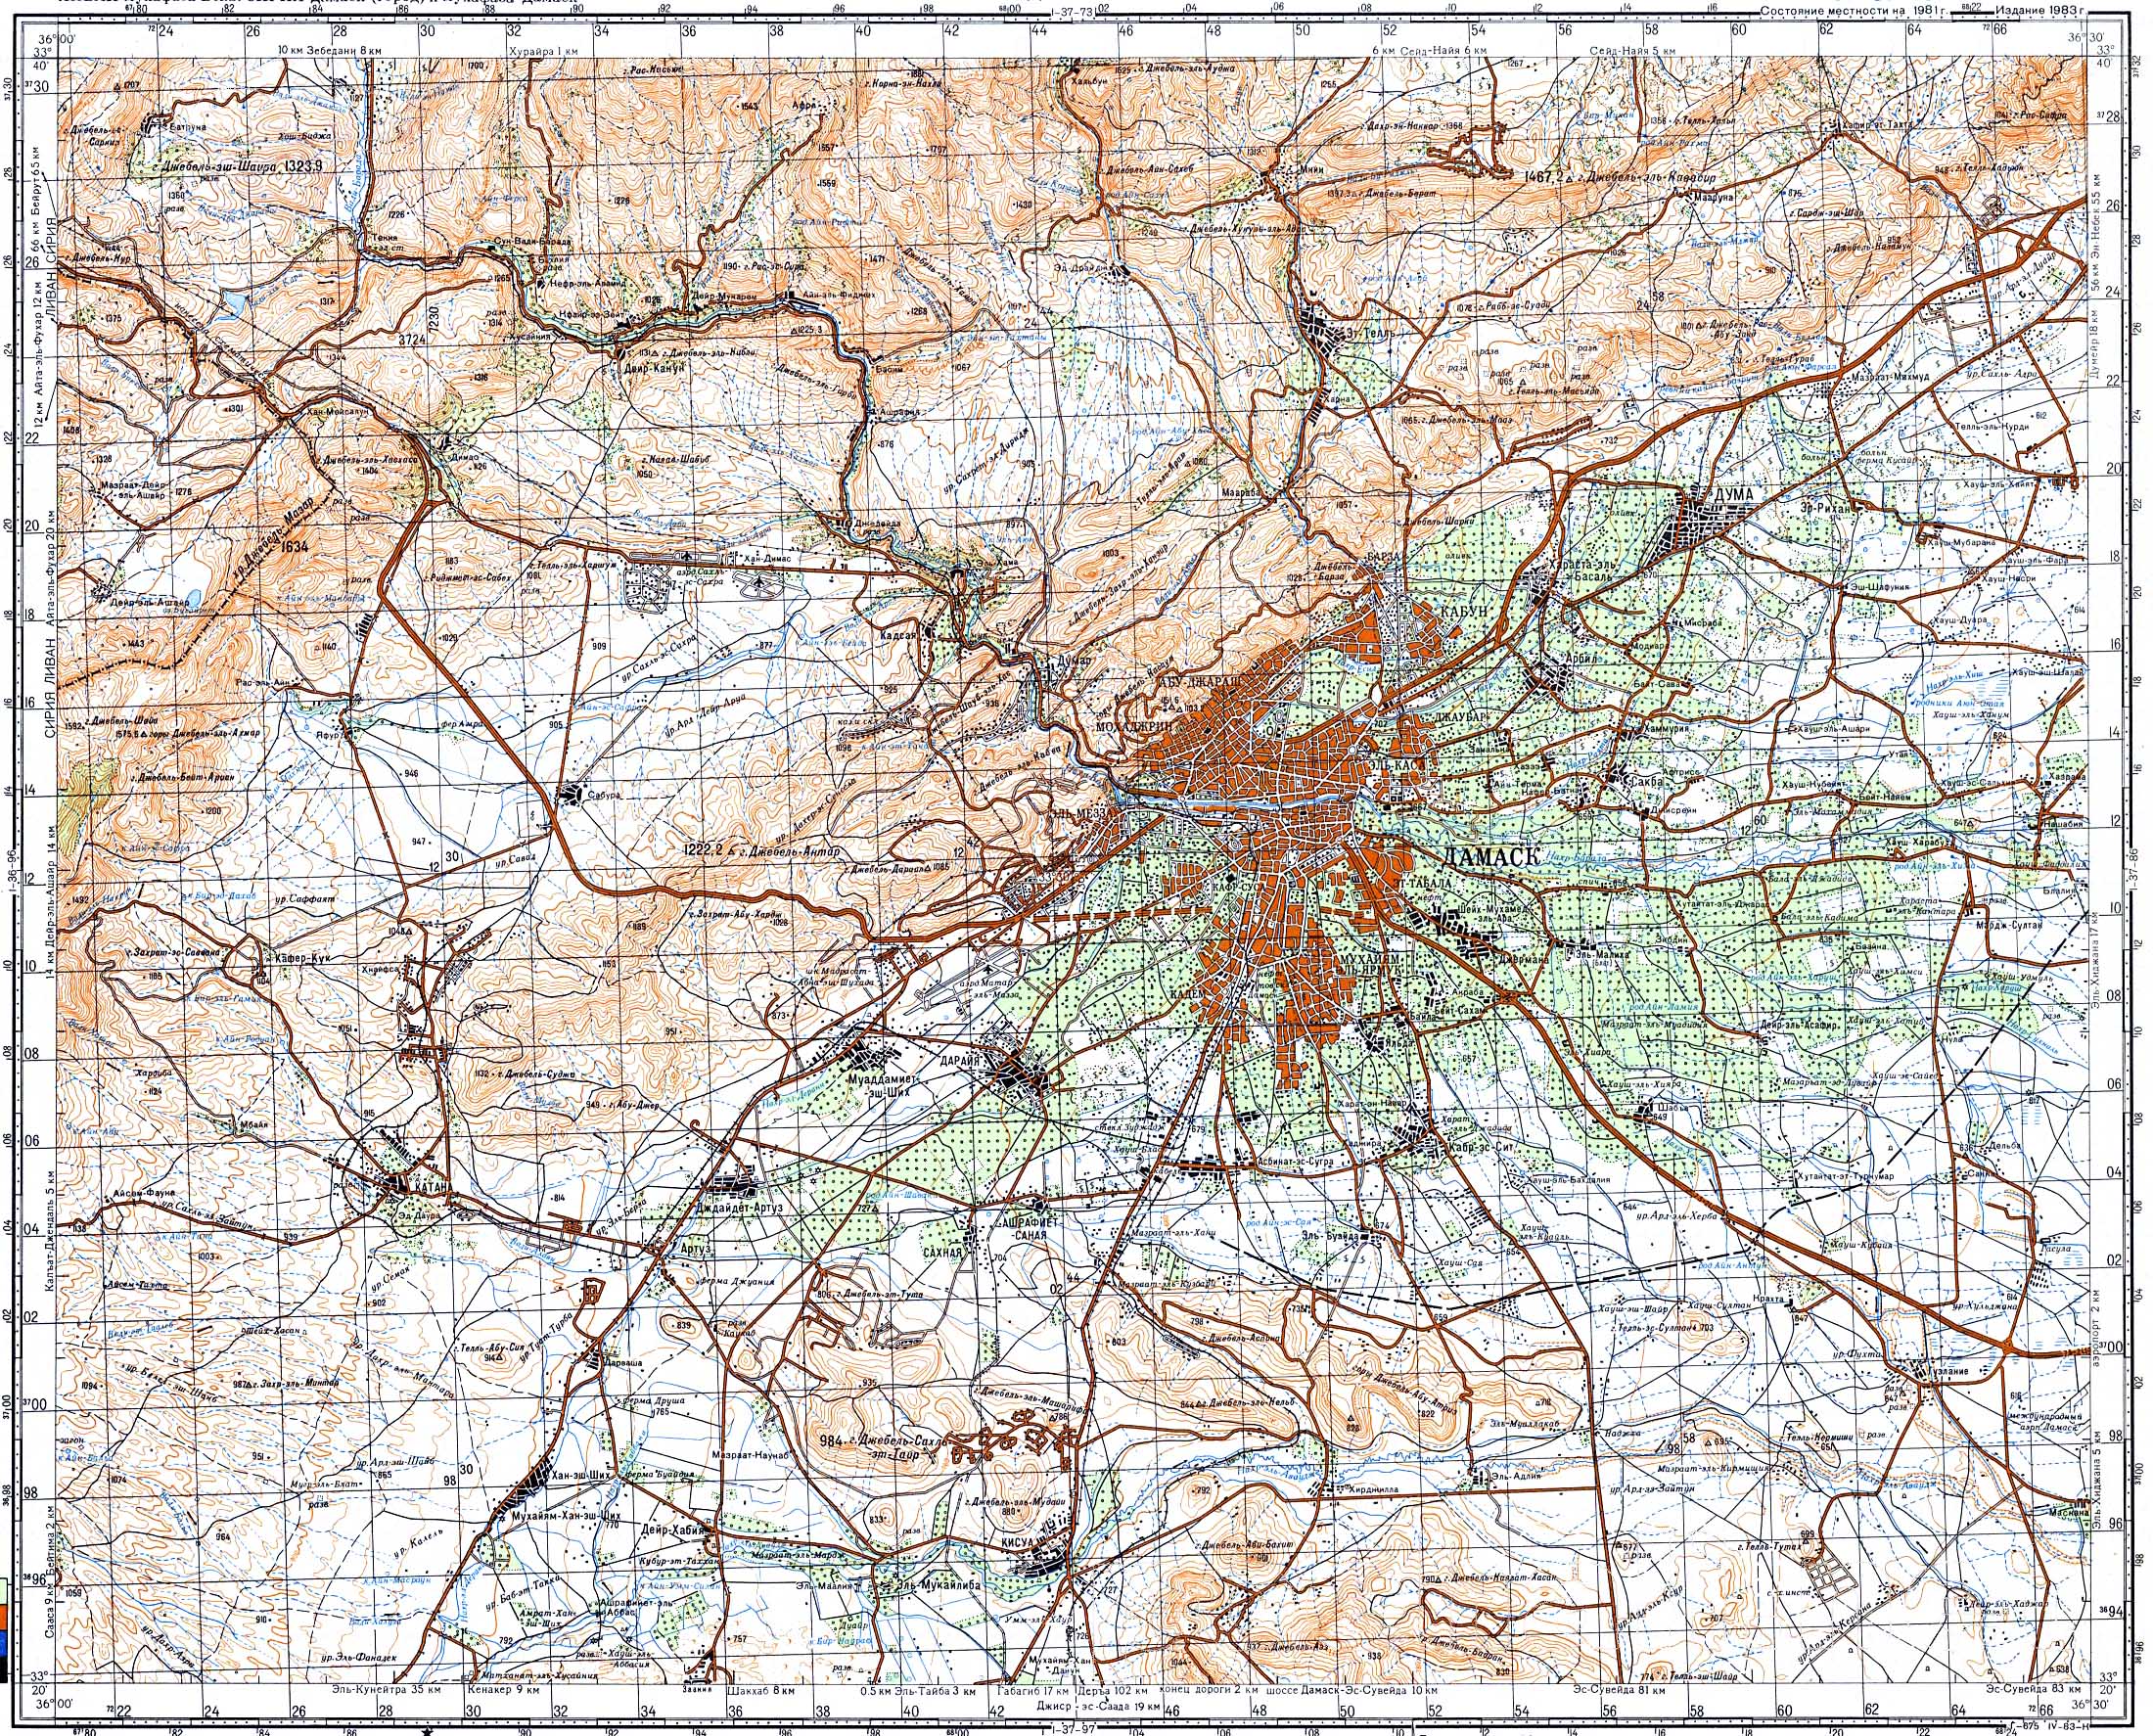 Топографические карты Генштаба / Карты листа I-37 (Дамаск) / Карты масштаба 1:100000 (километровки) / Лист I-37-85, Дамаск